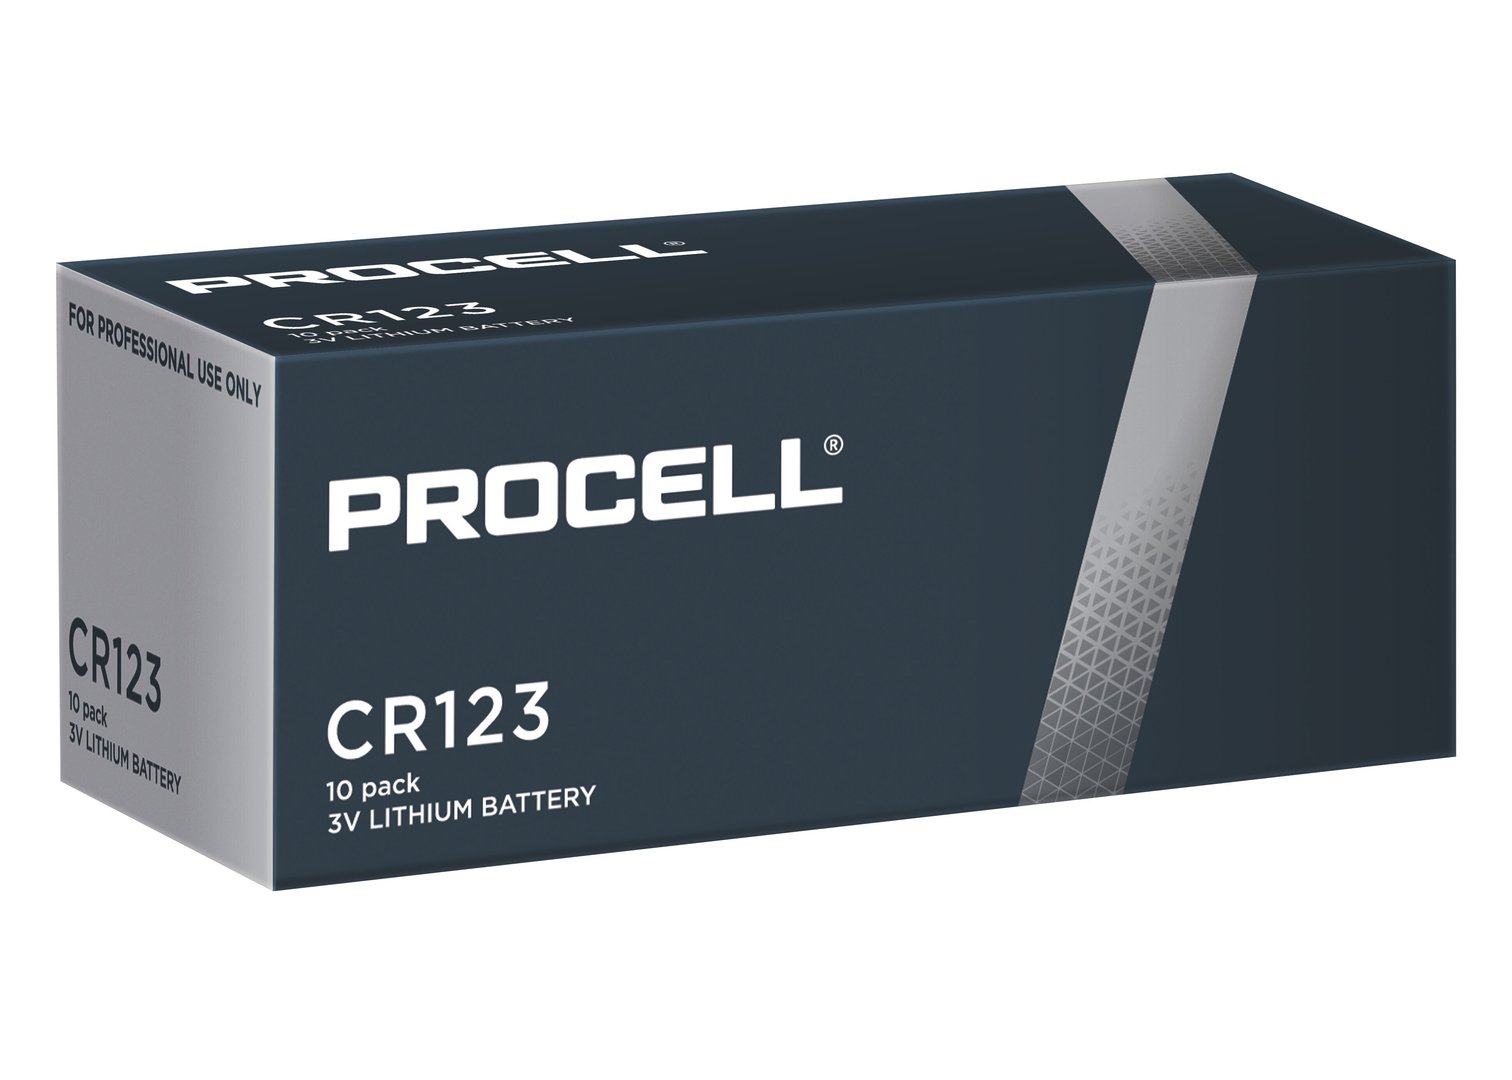 Duracell Procell CR123 3V Photobatterie (Lithium), 10-er Pack